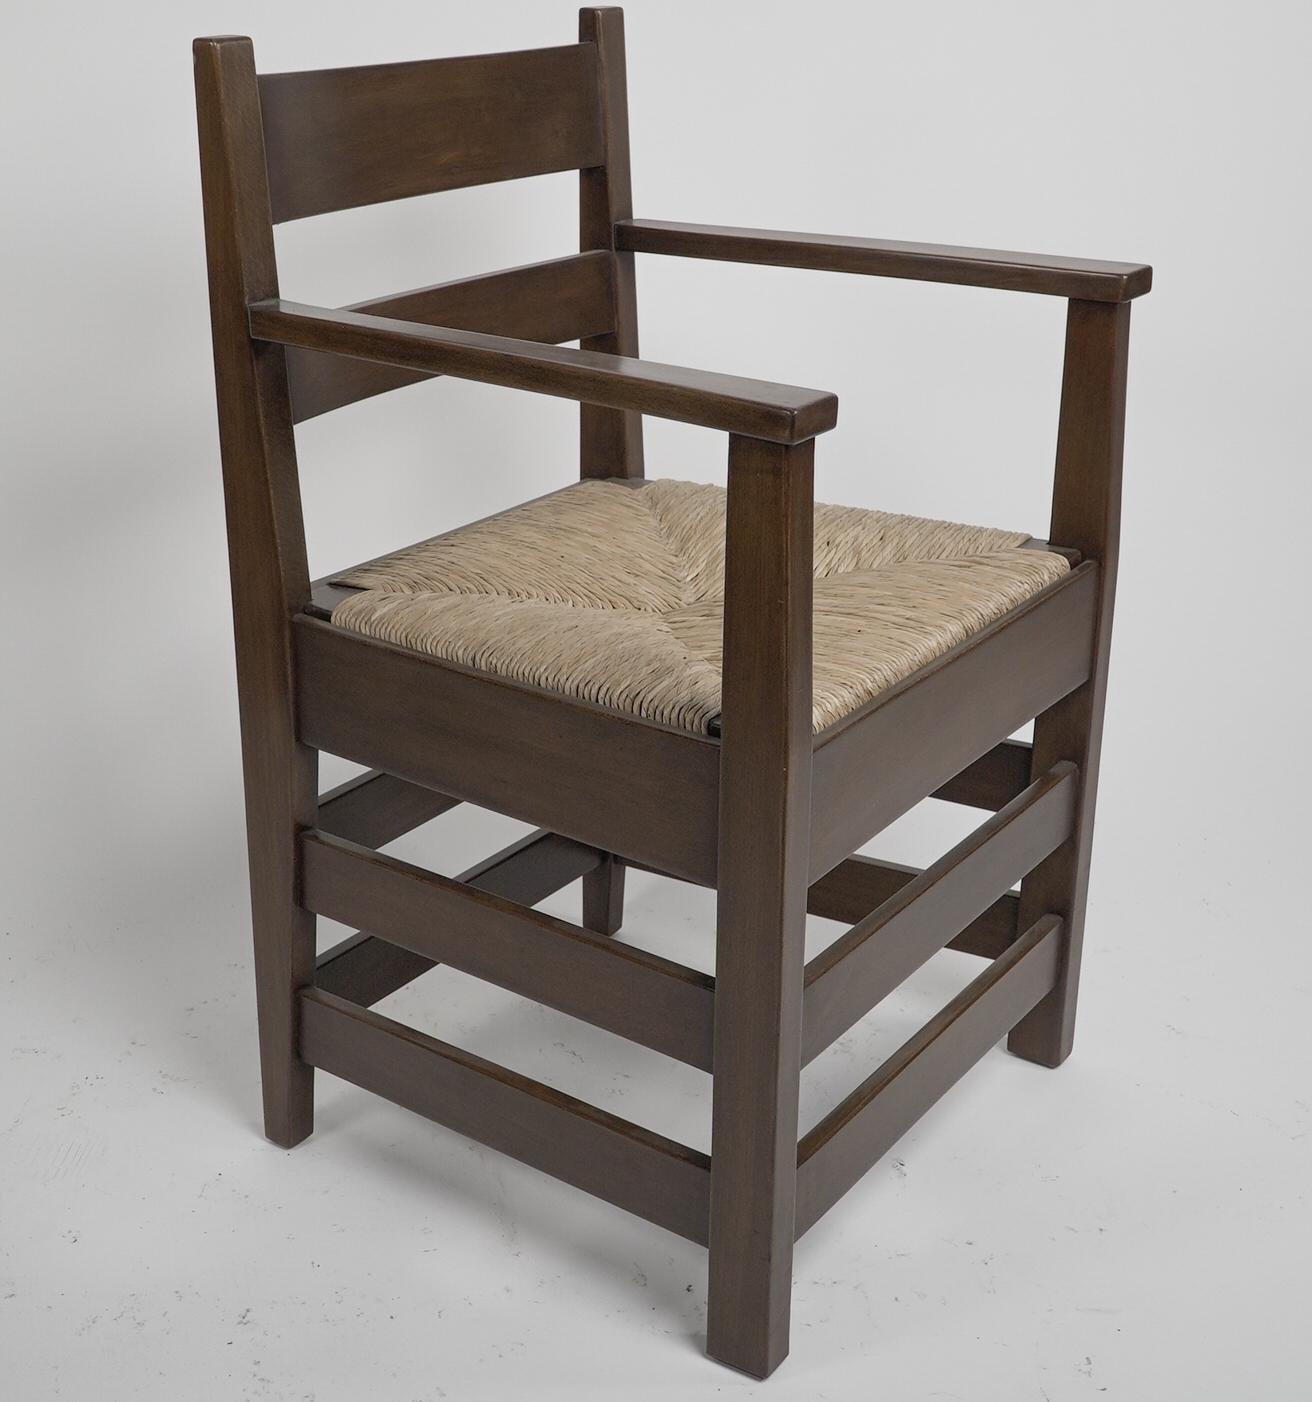 M H Baillie Scott von J P White. Ein Sessel aus Nussbaum im Arts & Crafts-Stil mit einem neuen Sitz aus Binsen. Abgebildet in: Möbel aus den Pyghtle Works in Bedford, von J. P. White. Möbel entworfen von M H Baillie Scott.
